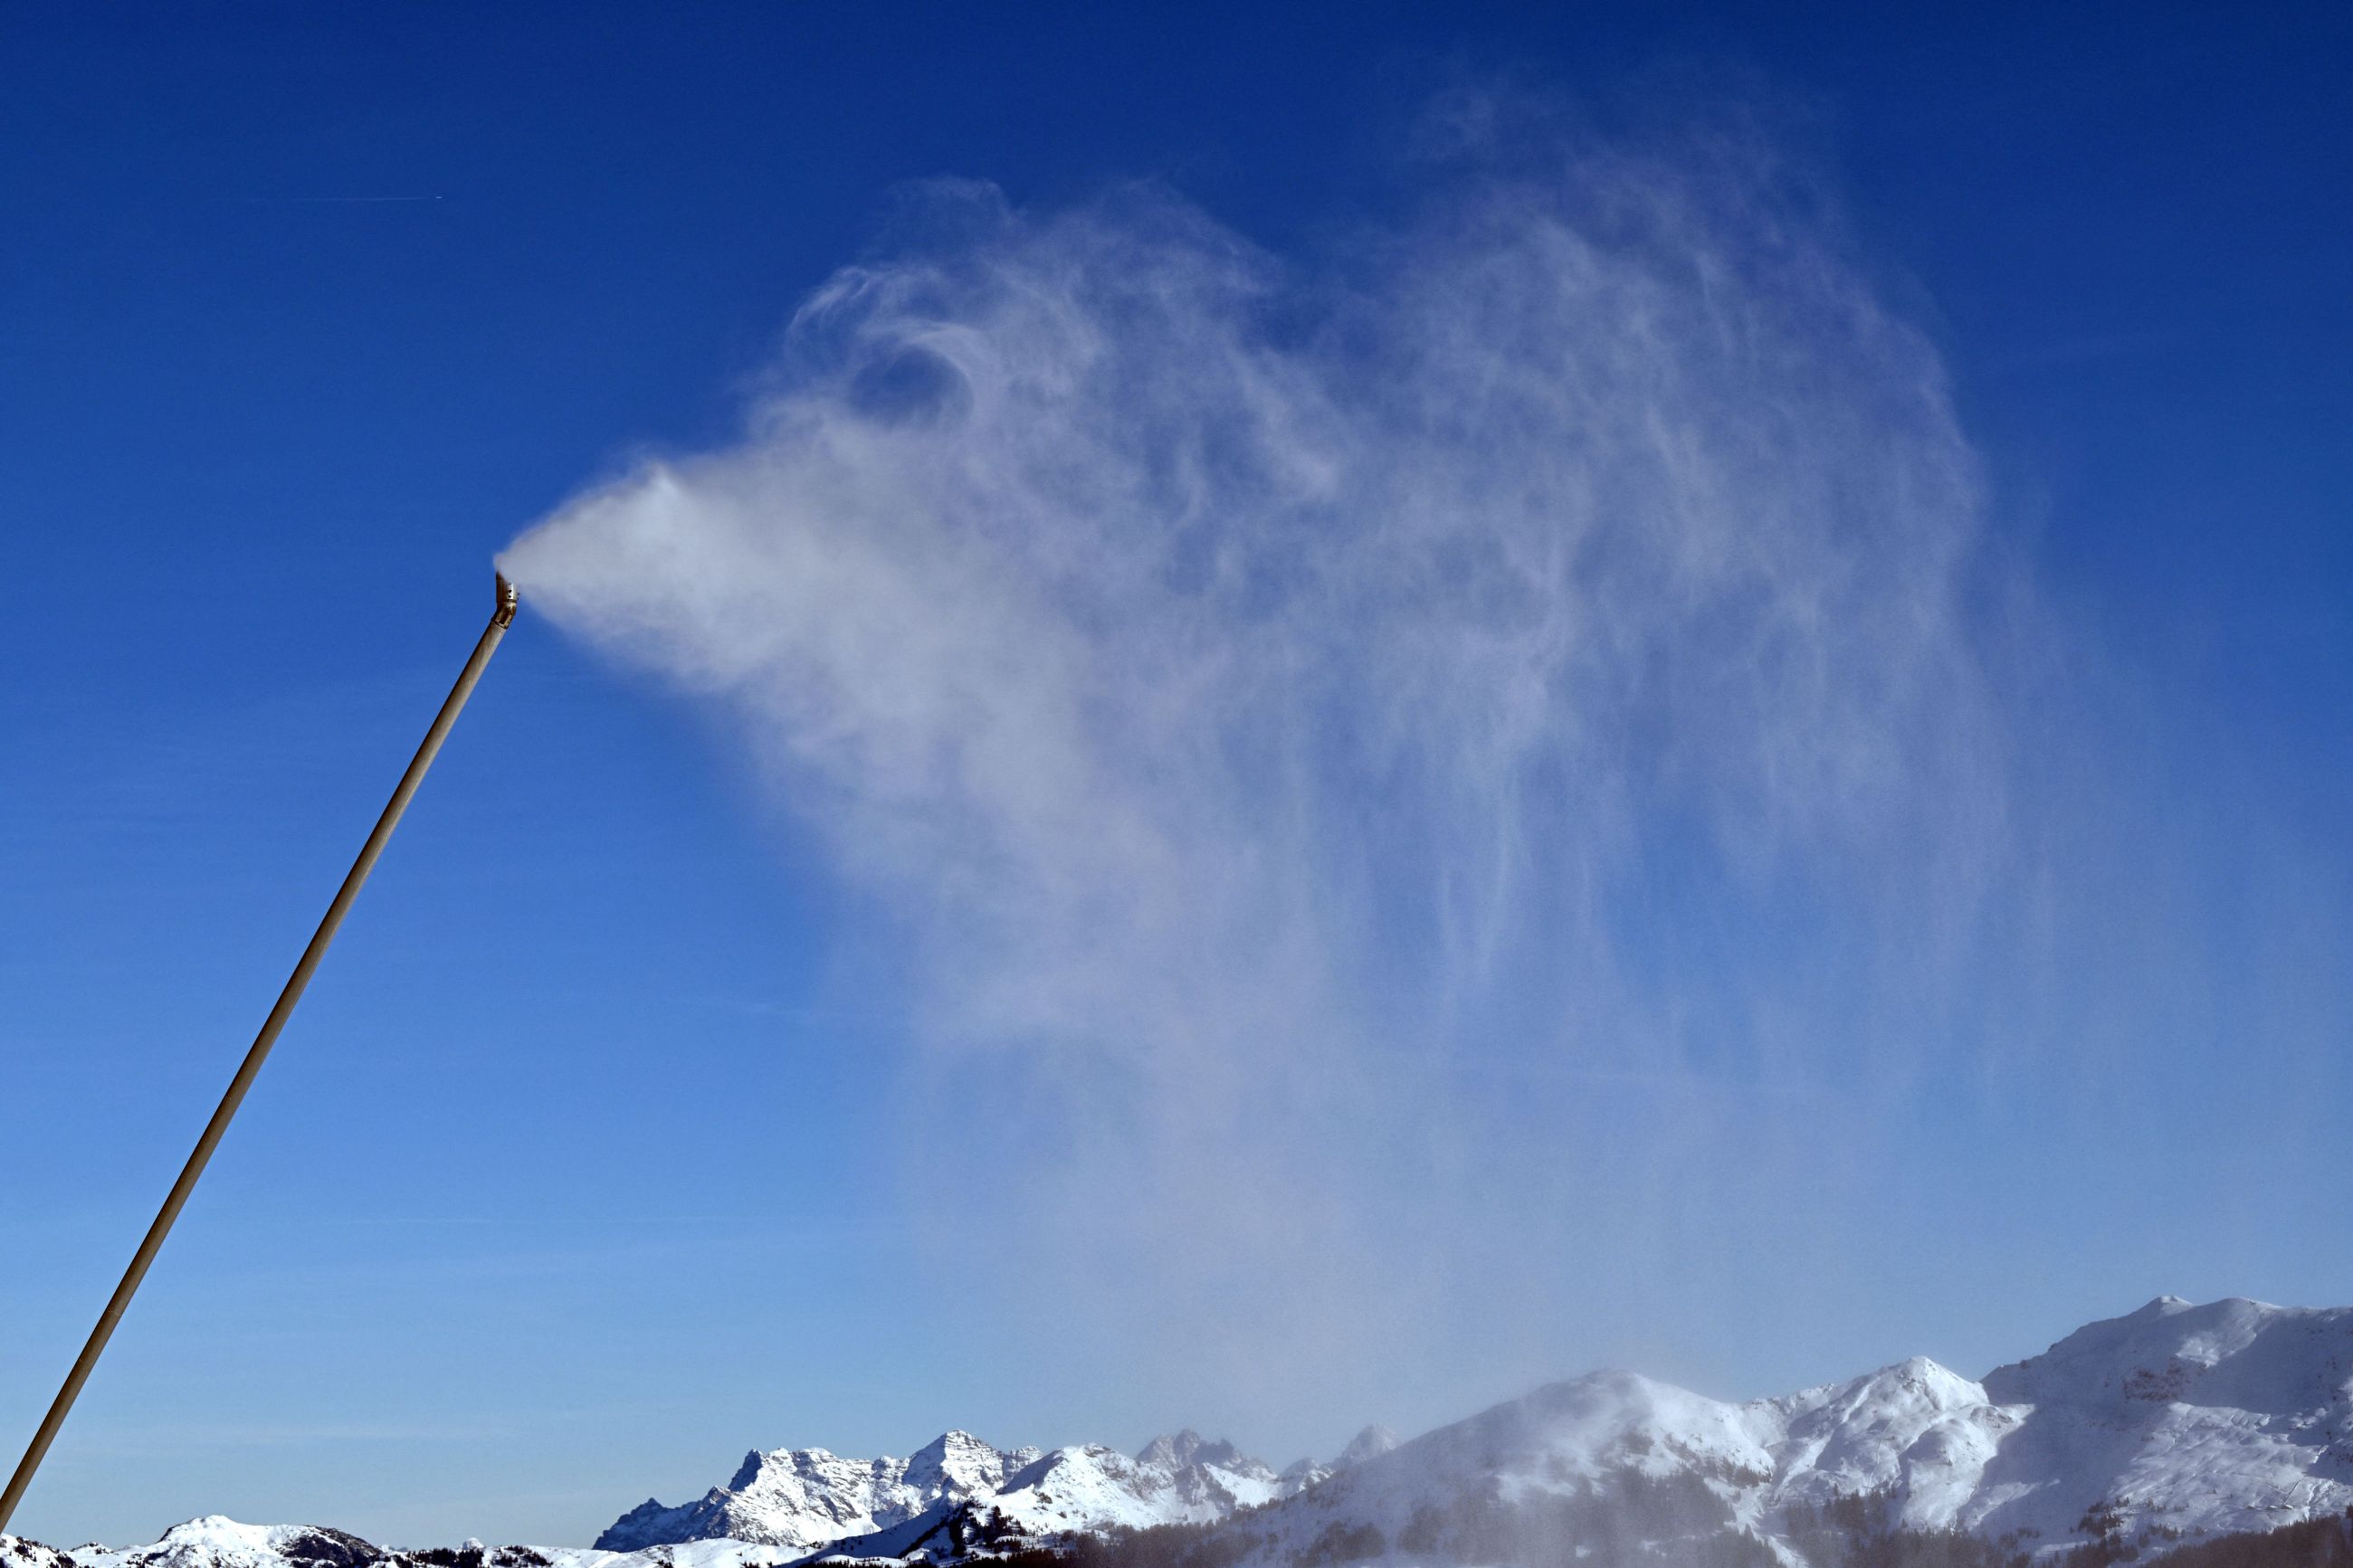 La nieve artificial ya no es suficiente: más de un tercio de las estaciones  de esquí tendrán que cerrar